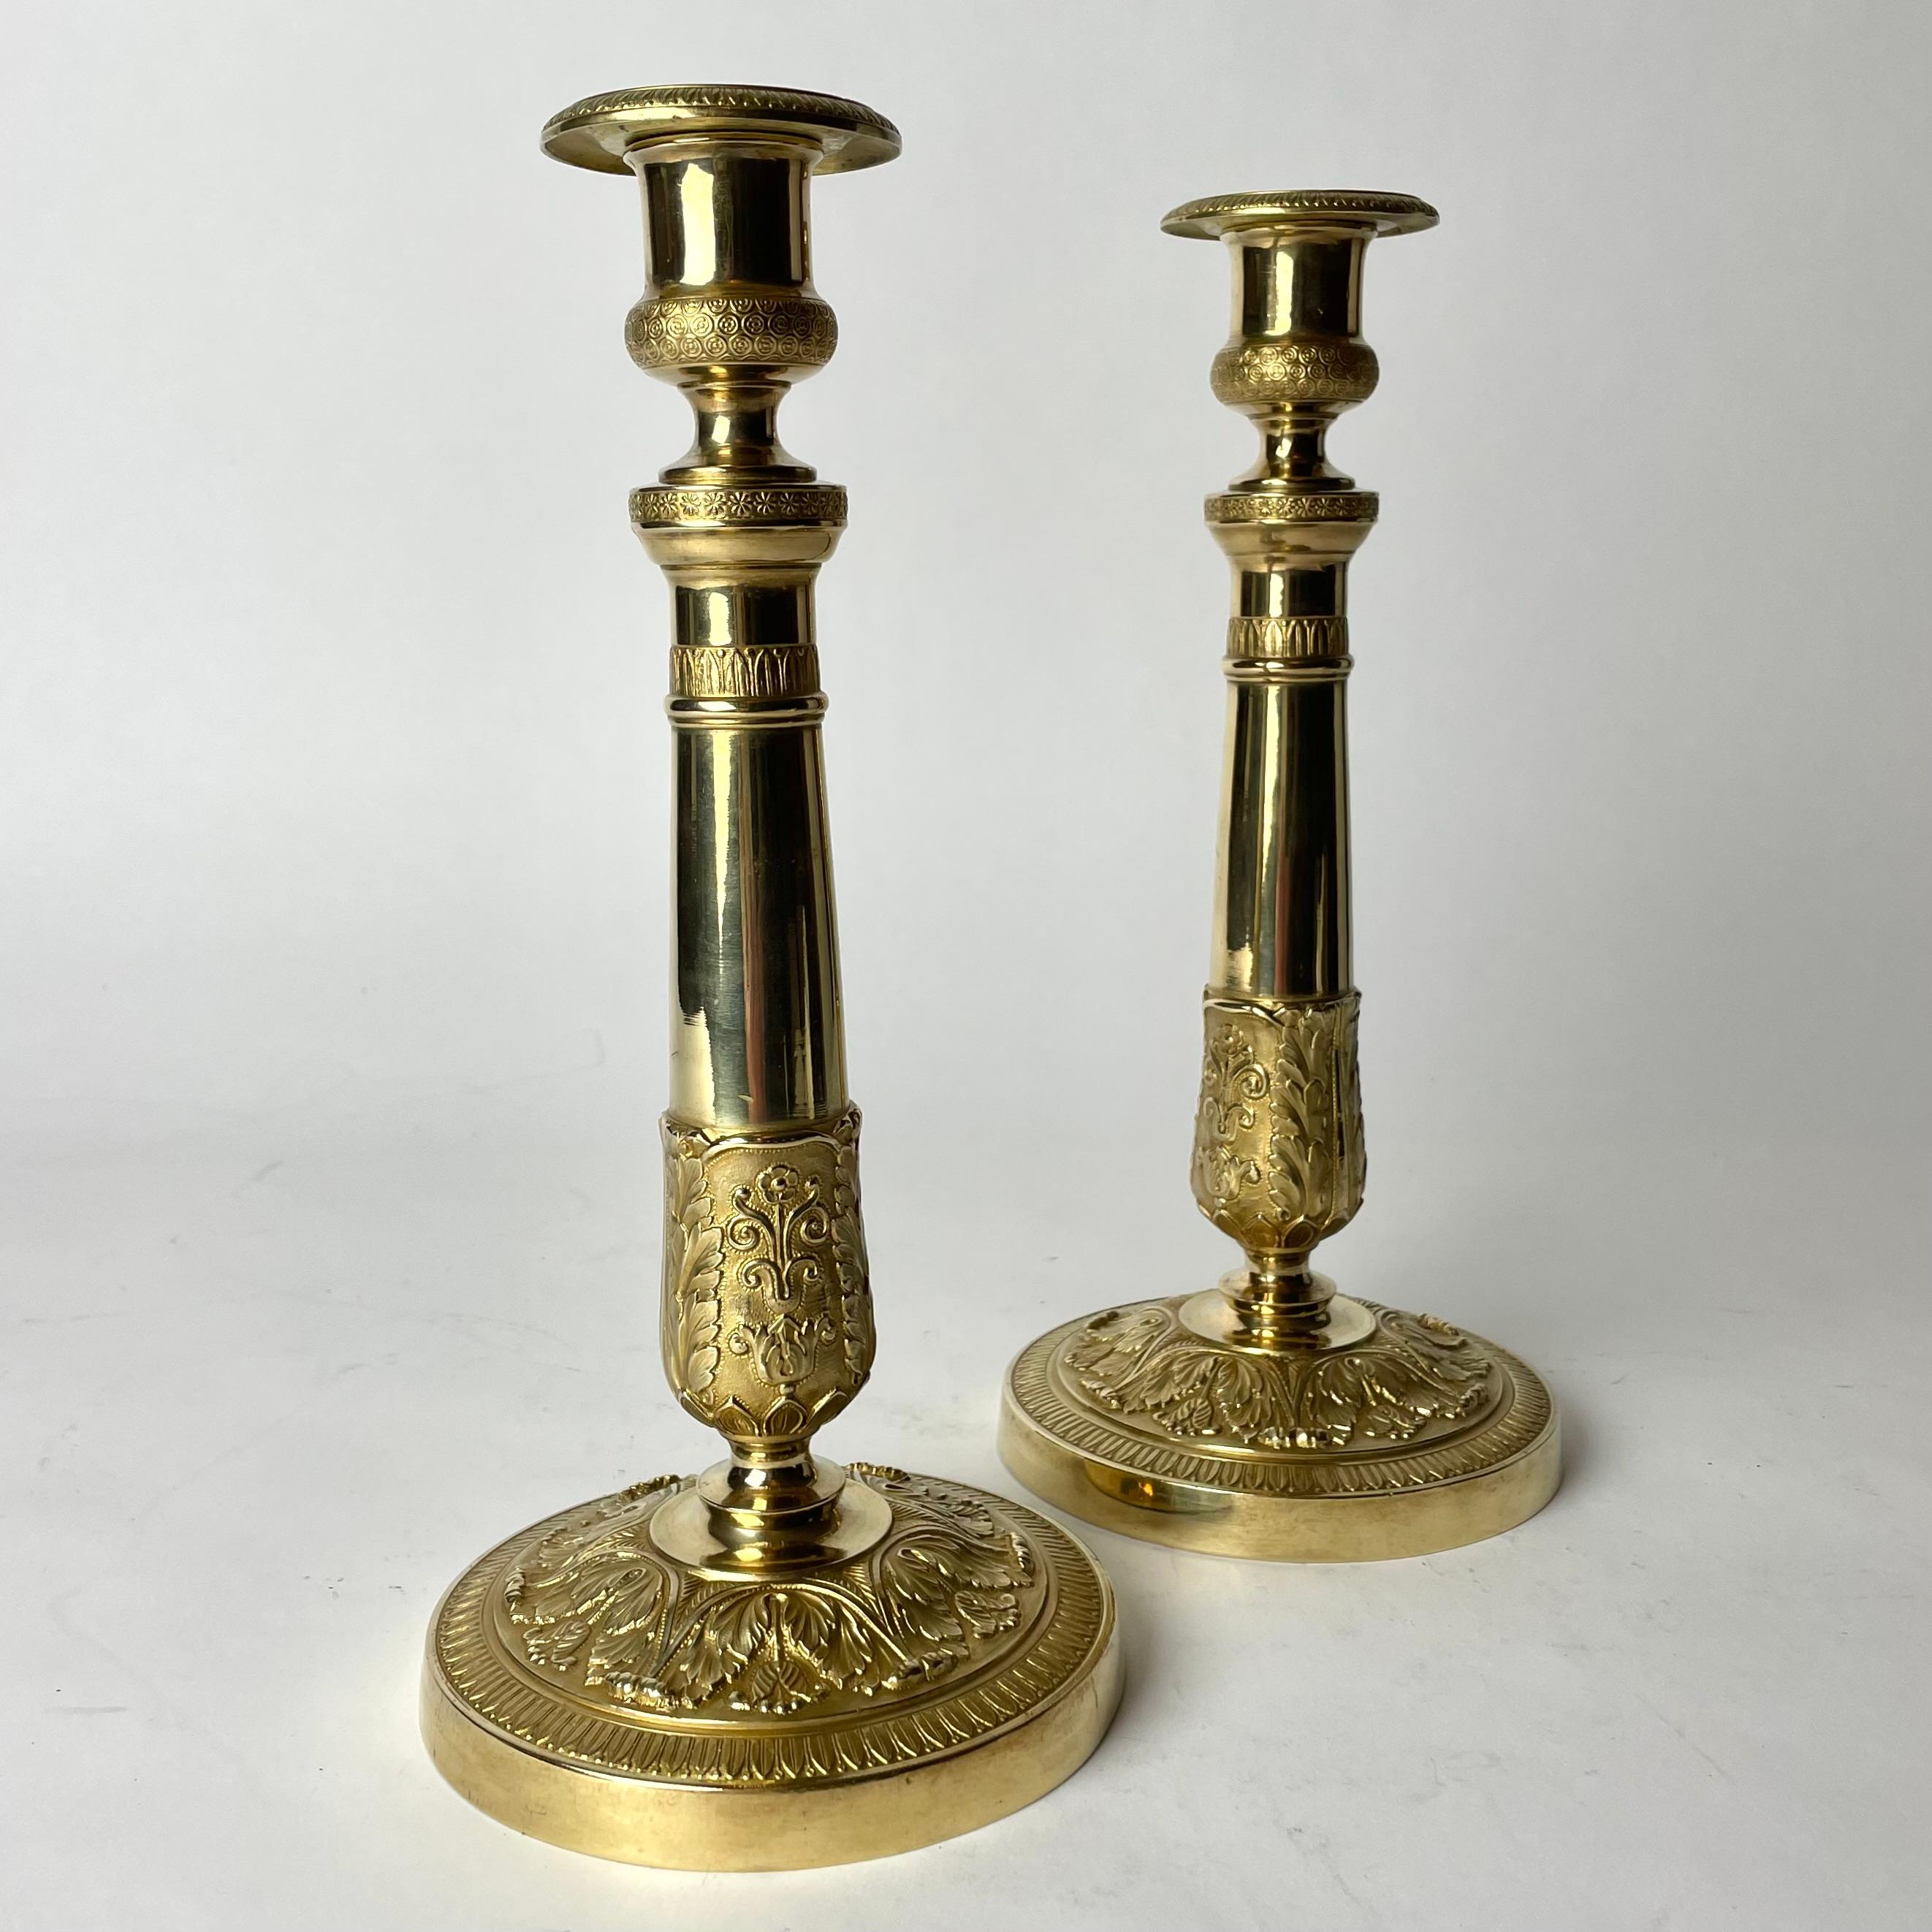 Elegante paire de chandeliers Empire en bronze doré. Fabriqué en France dans les années 1820. Richement décoré de motifs d'époque.

Usure correspondant à l'âge et à l'usage. 